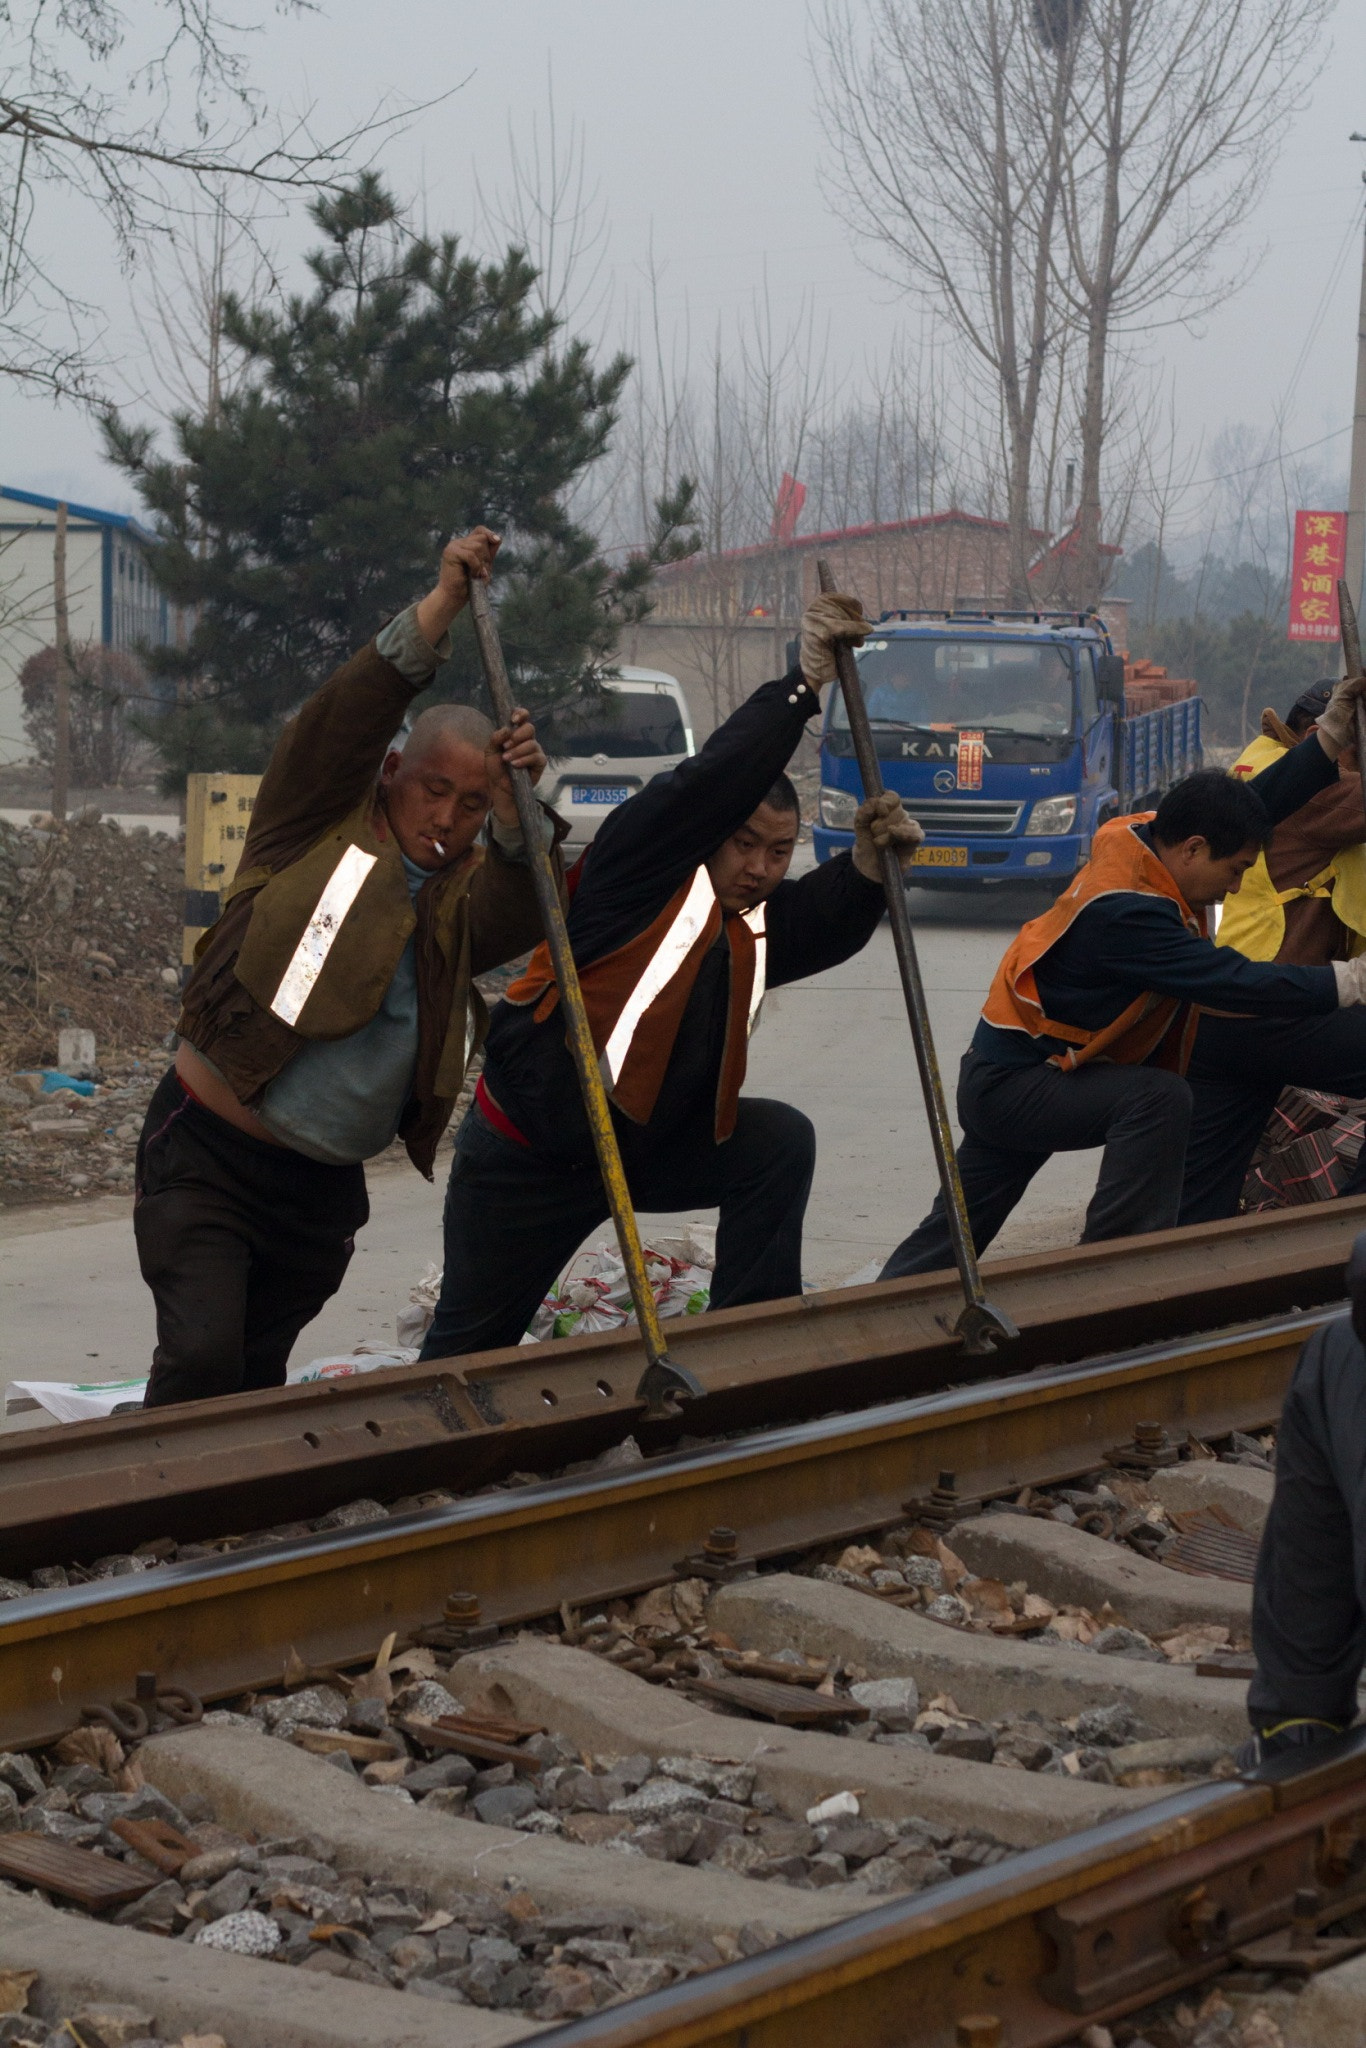 Railway worker in action